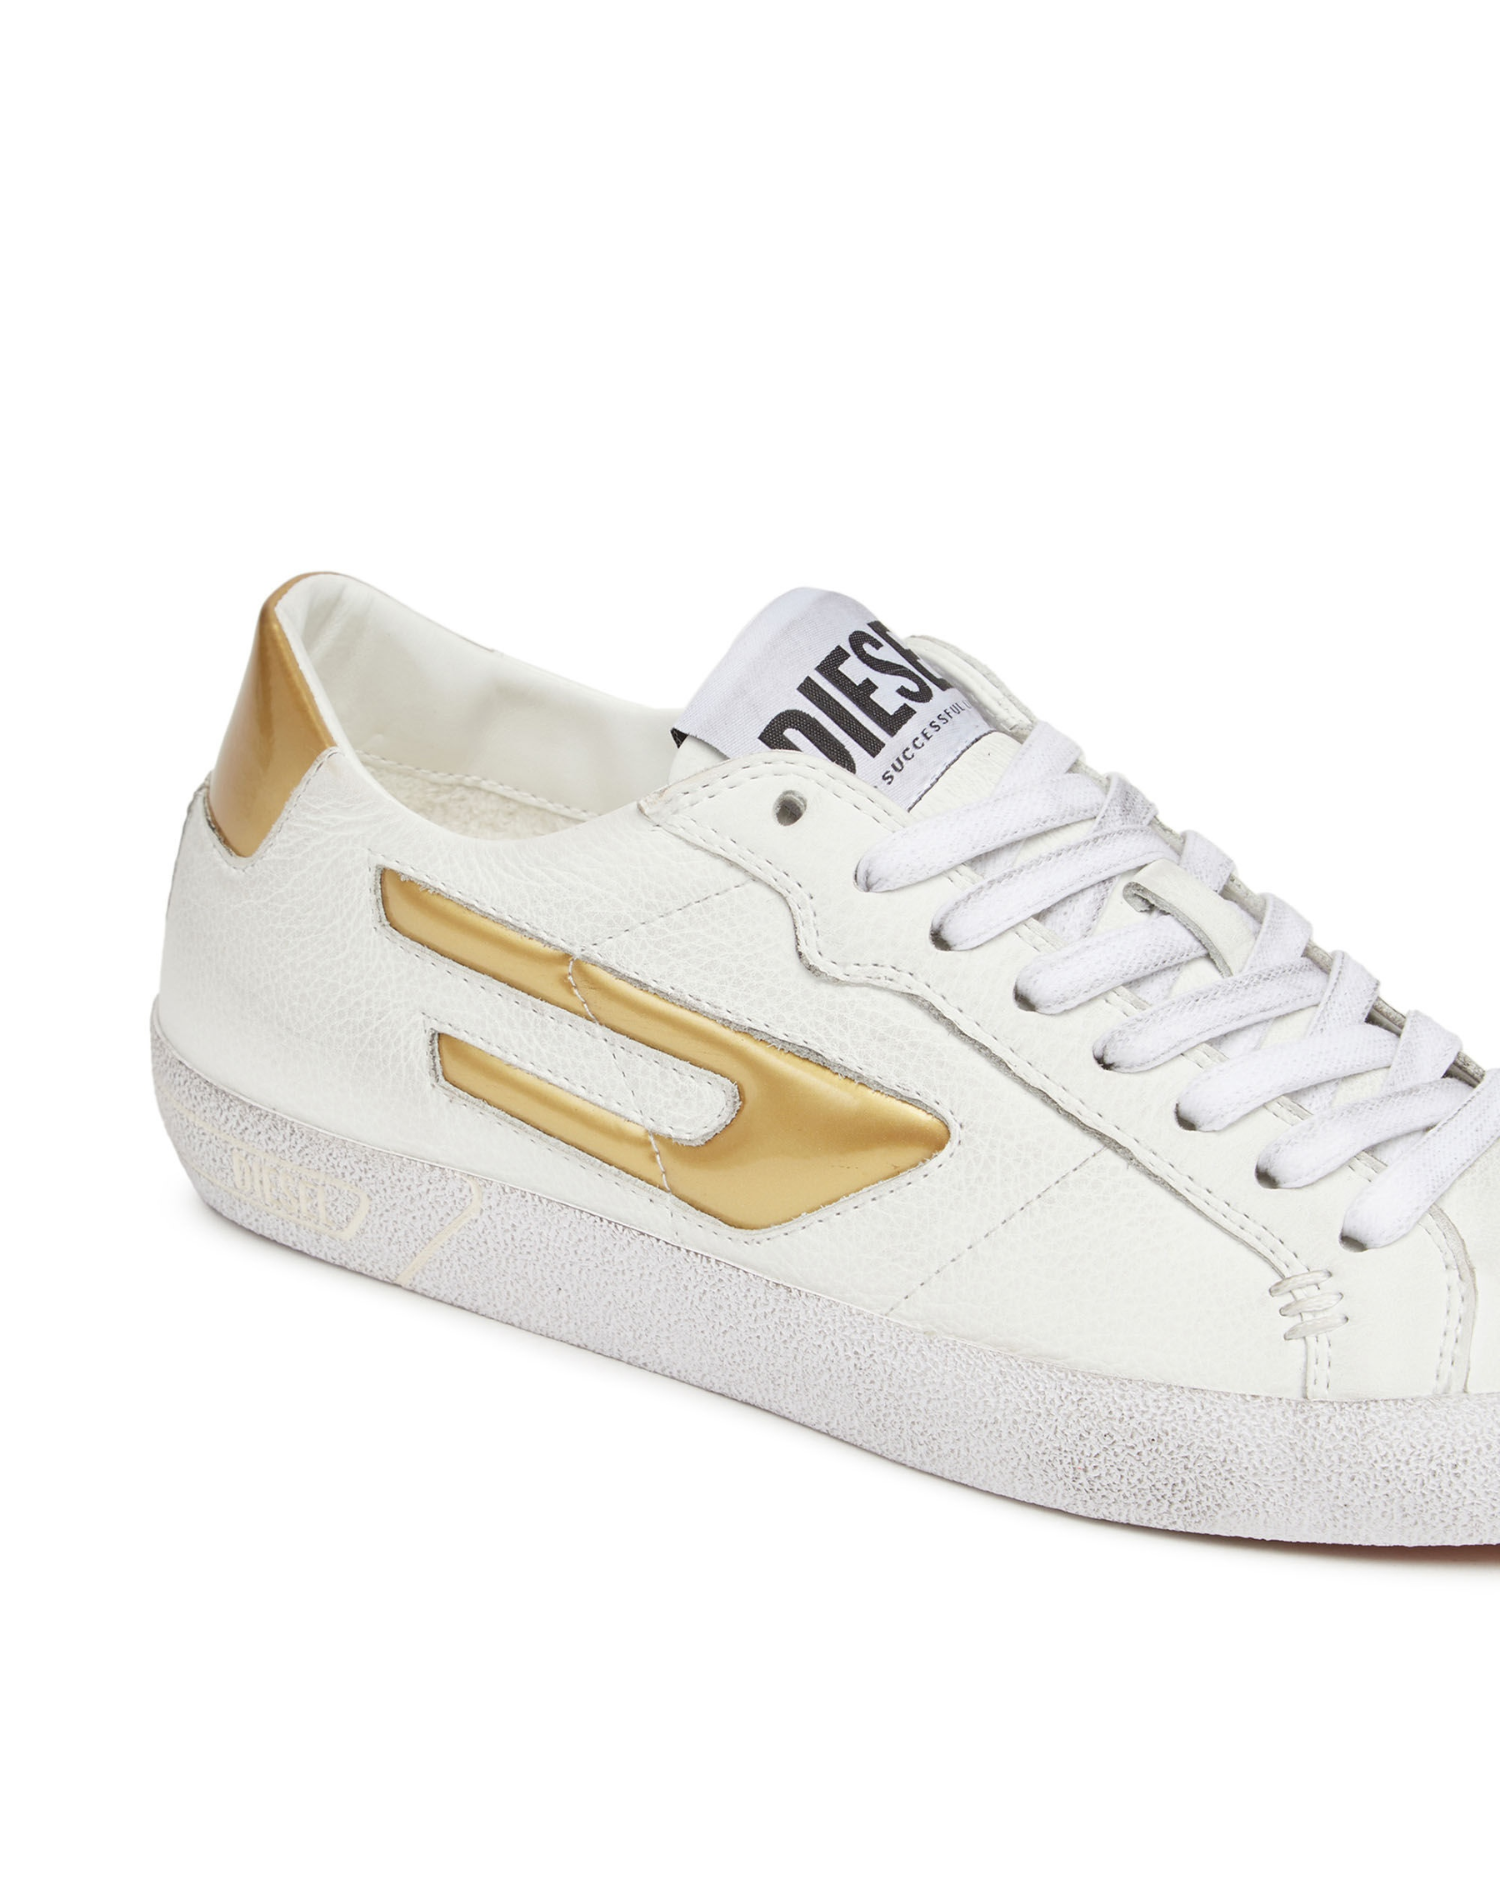 Diesel - S-Leroji Low W Sneakers - White/Gold